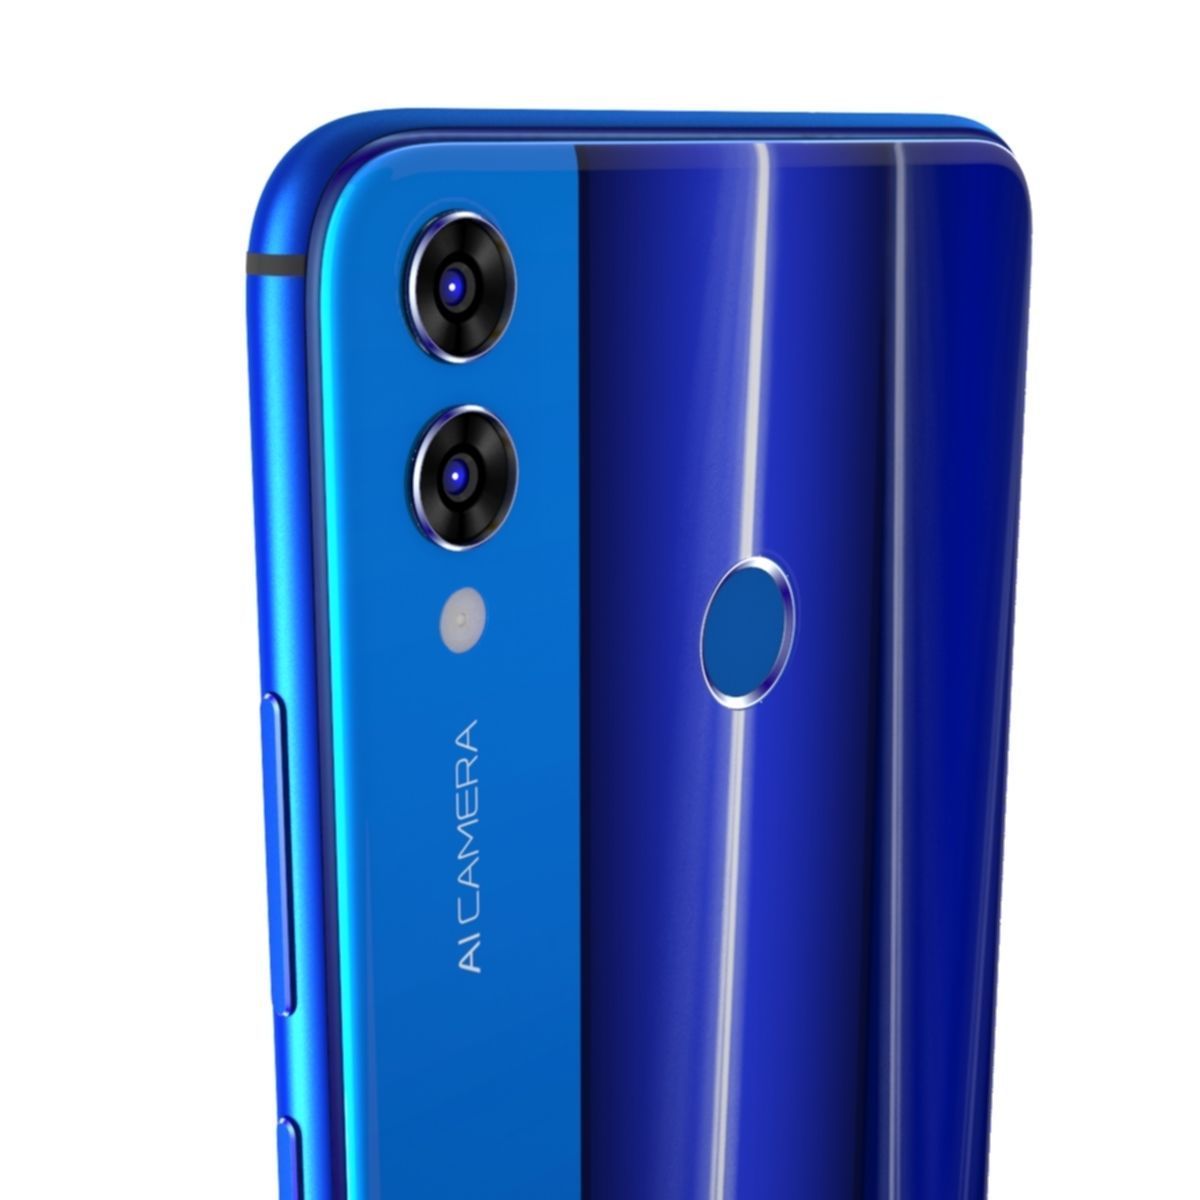 مقارنة بين هاتف Honor 8X وهاتف Huawei Nova 3i المتقاربين في الإمكانيات والسعر